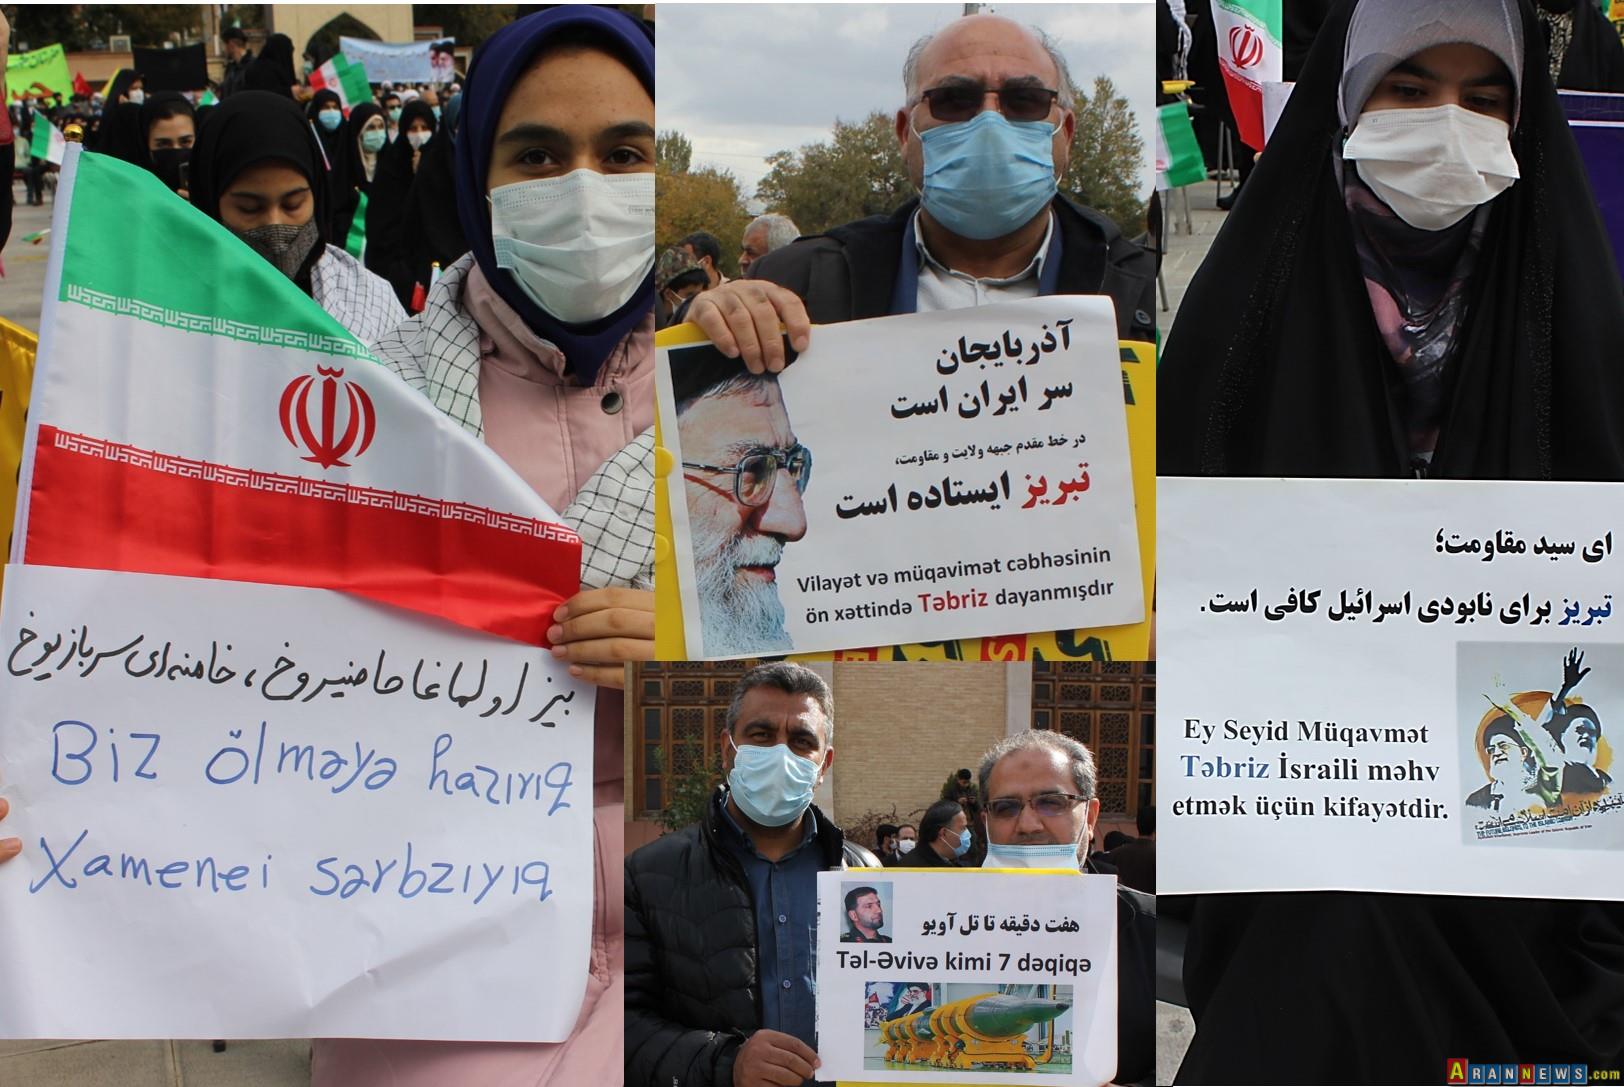 اجتماع ضد امریکایی 13 آبان مردم انقلابی تبریز – تصاویر 